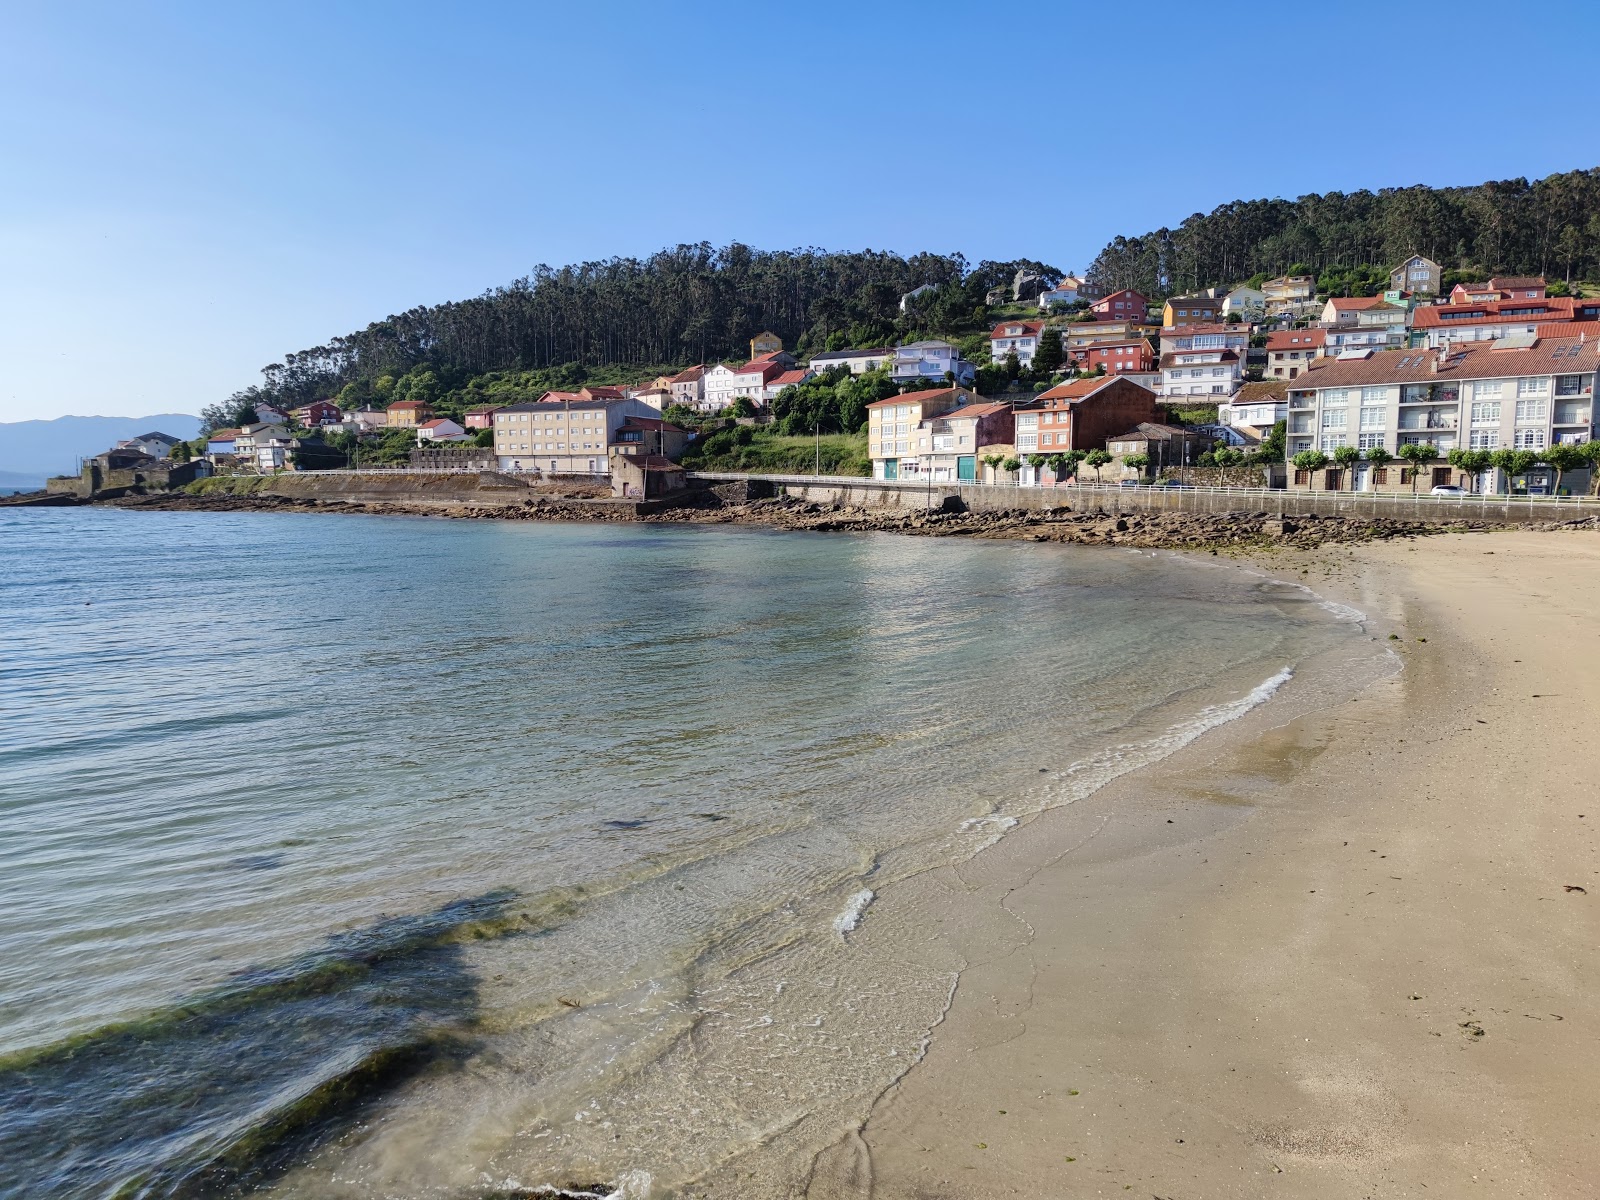 Fotografie cu Praia do Castelo cu o suprafață de apa pură turcoaz